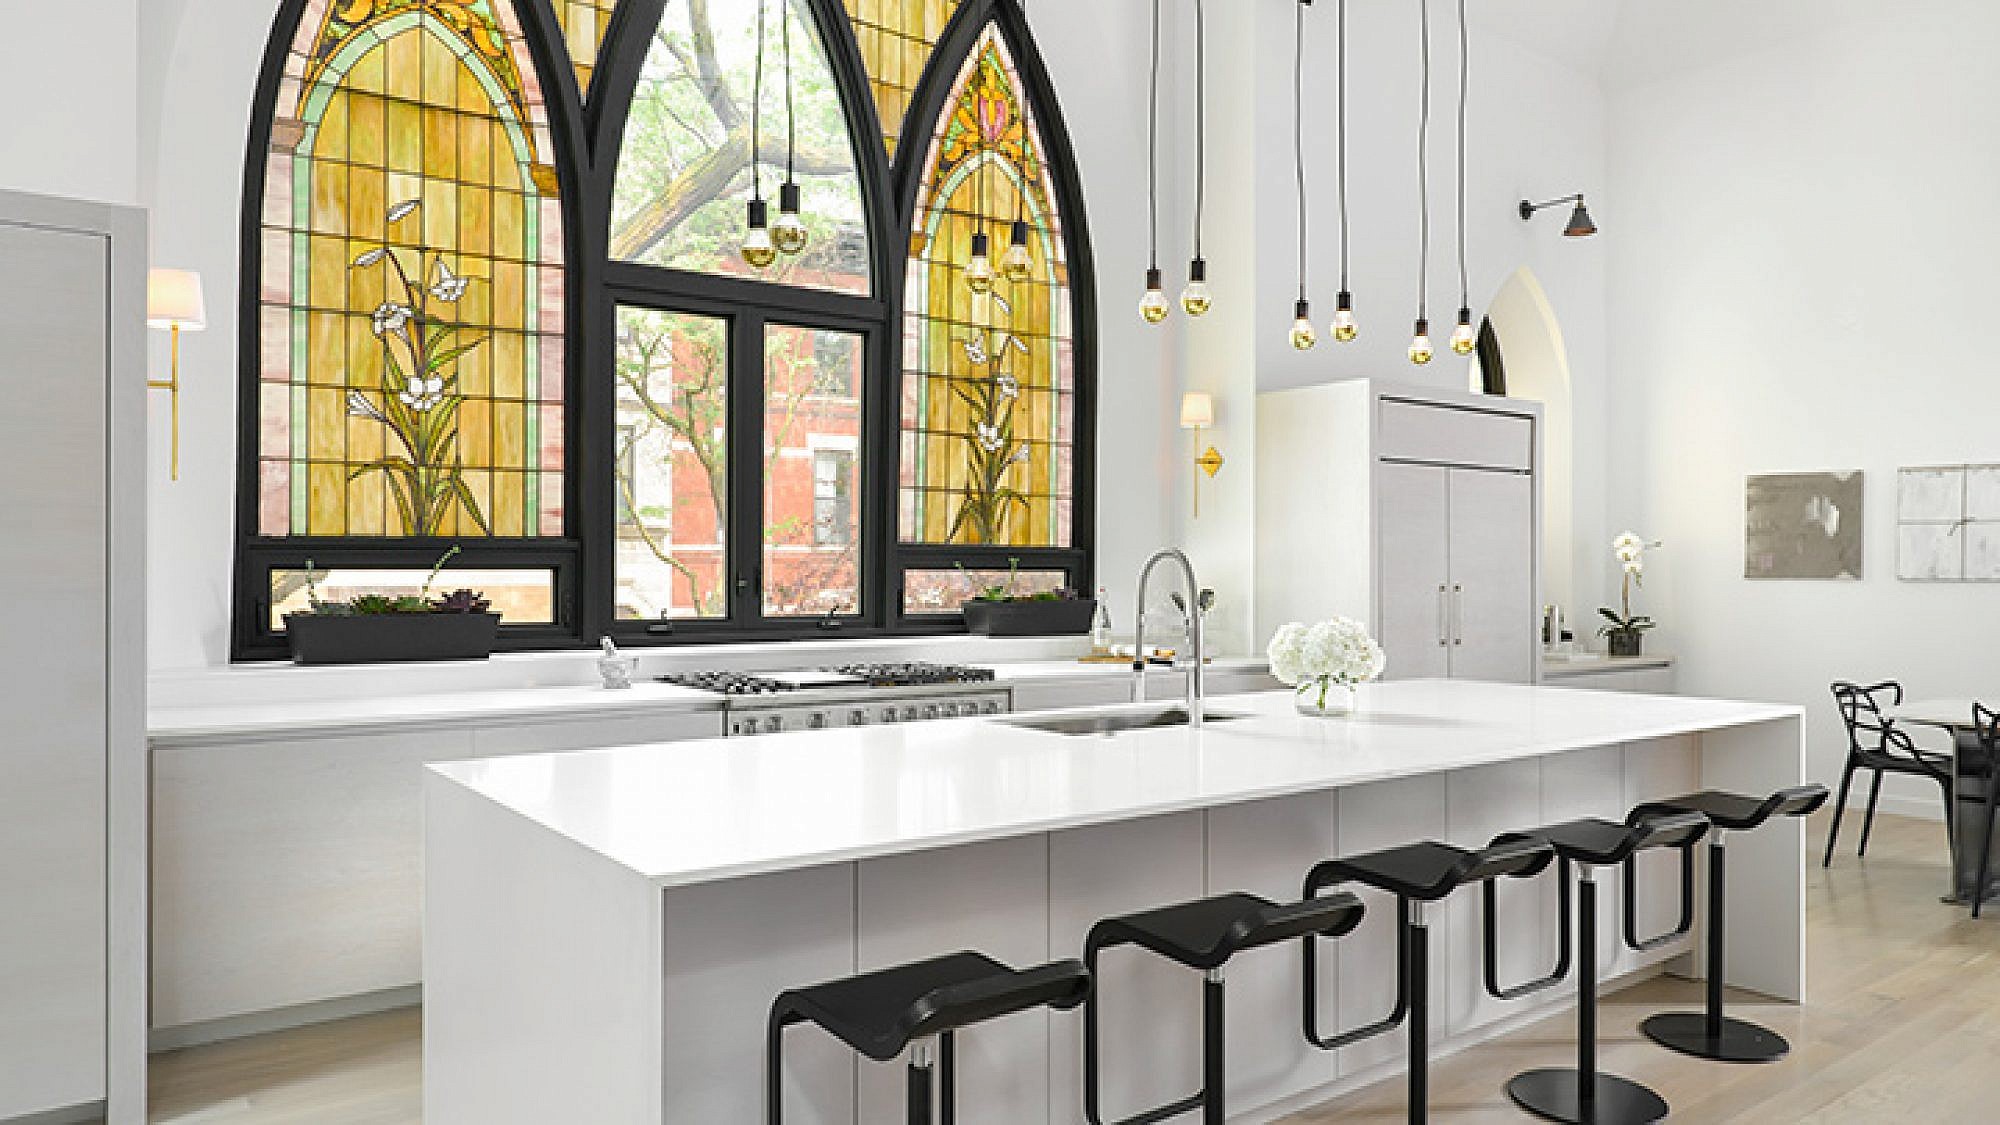 המטבח ניחן בעיצוב לבן ומינימליסטי המפנה את במה לחלון הוויטראז' המקורי, הגדול והמרשים | צילום: Jim Tschetter